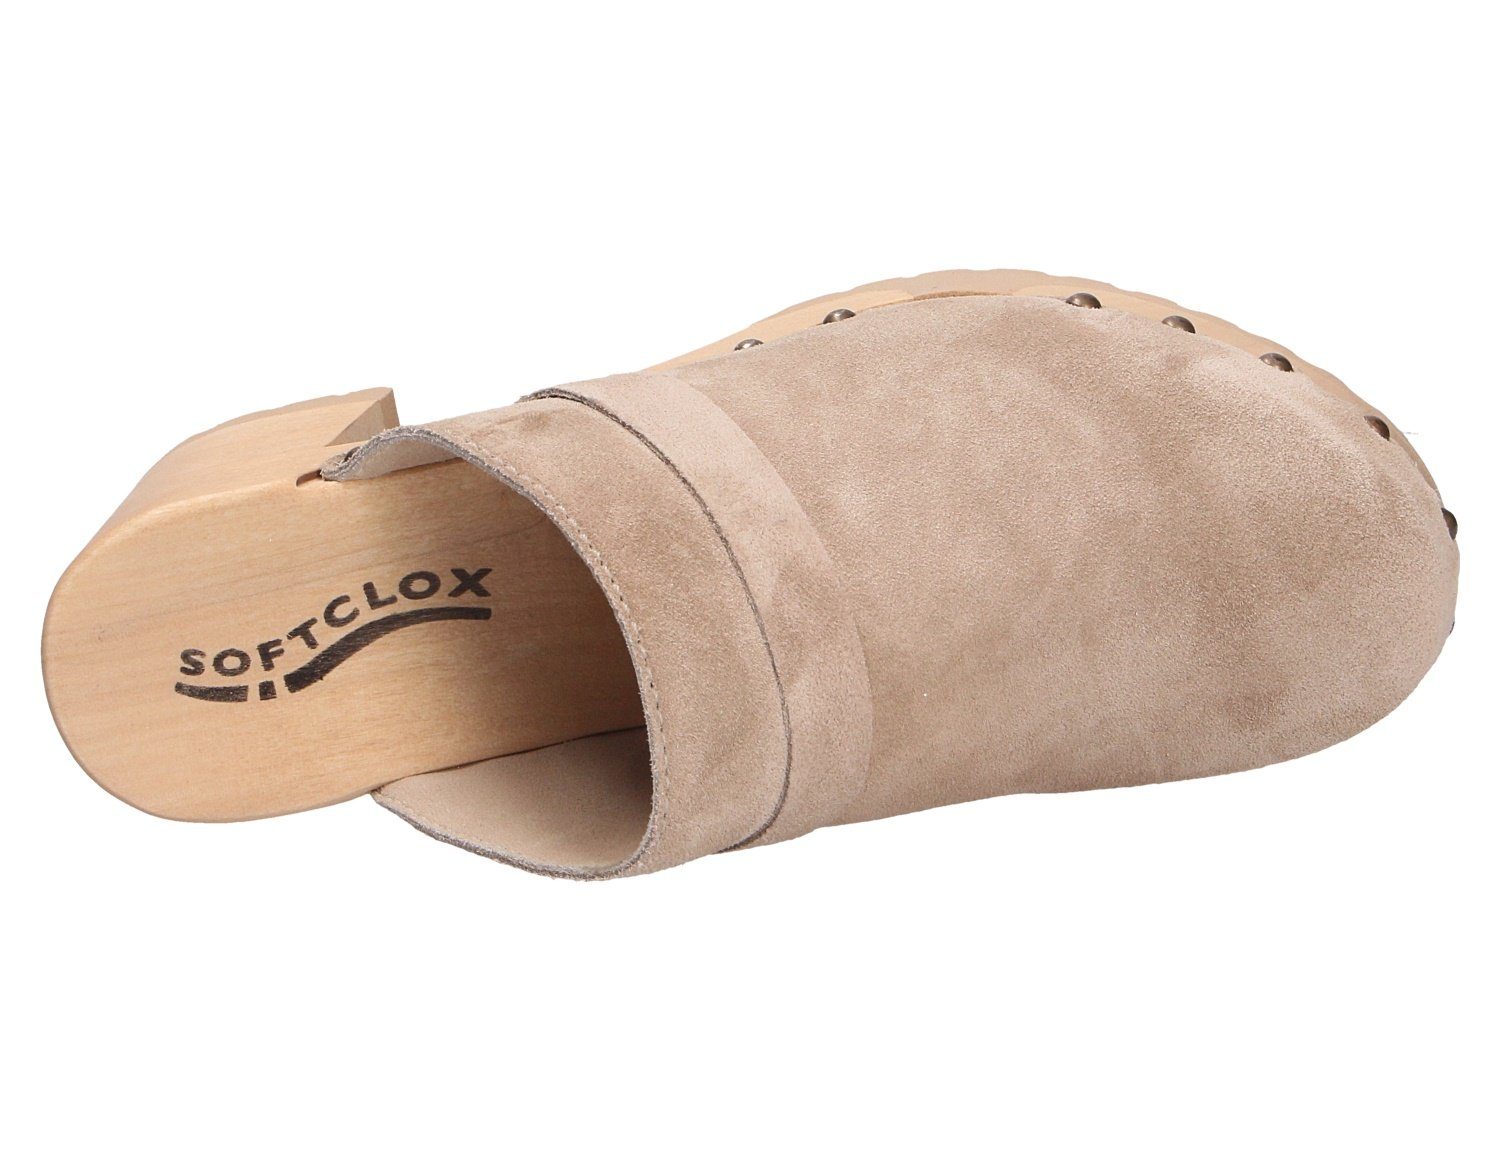 Flexible Pantolette Softclox Laufsohle